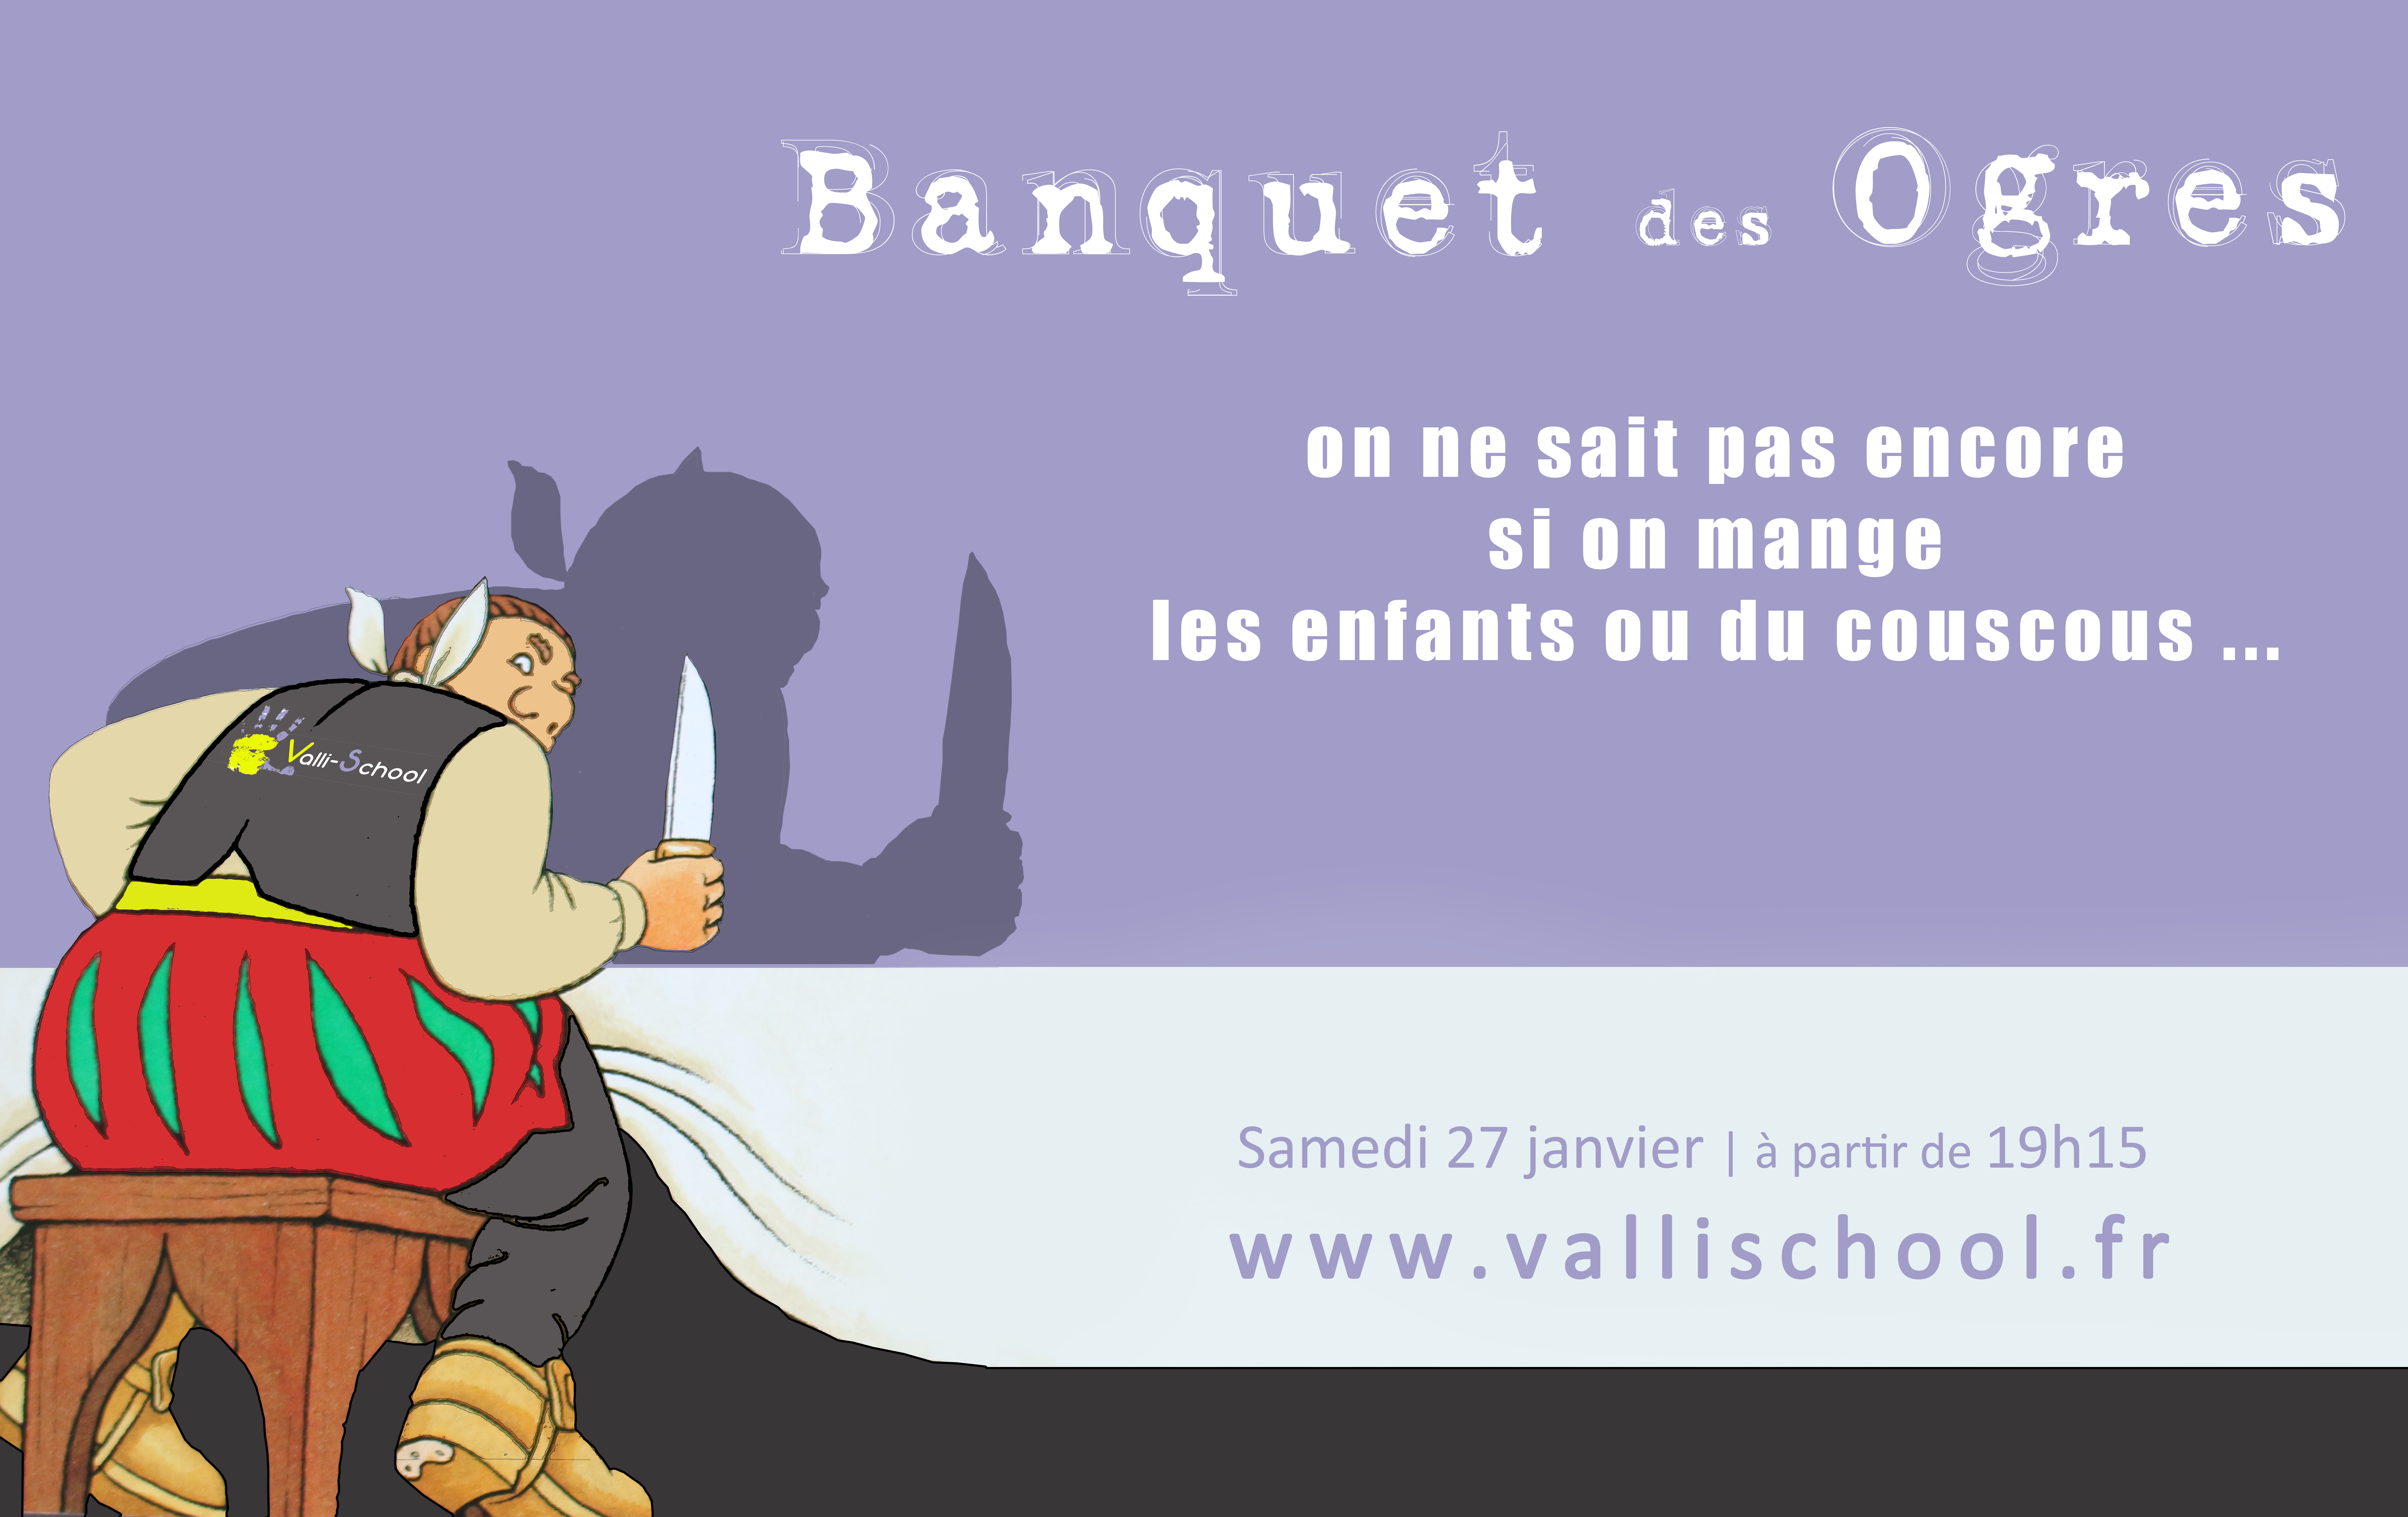 Visuel Web - Banquet des ogres copie.jpg